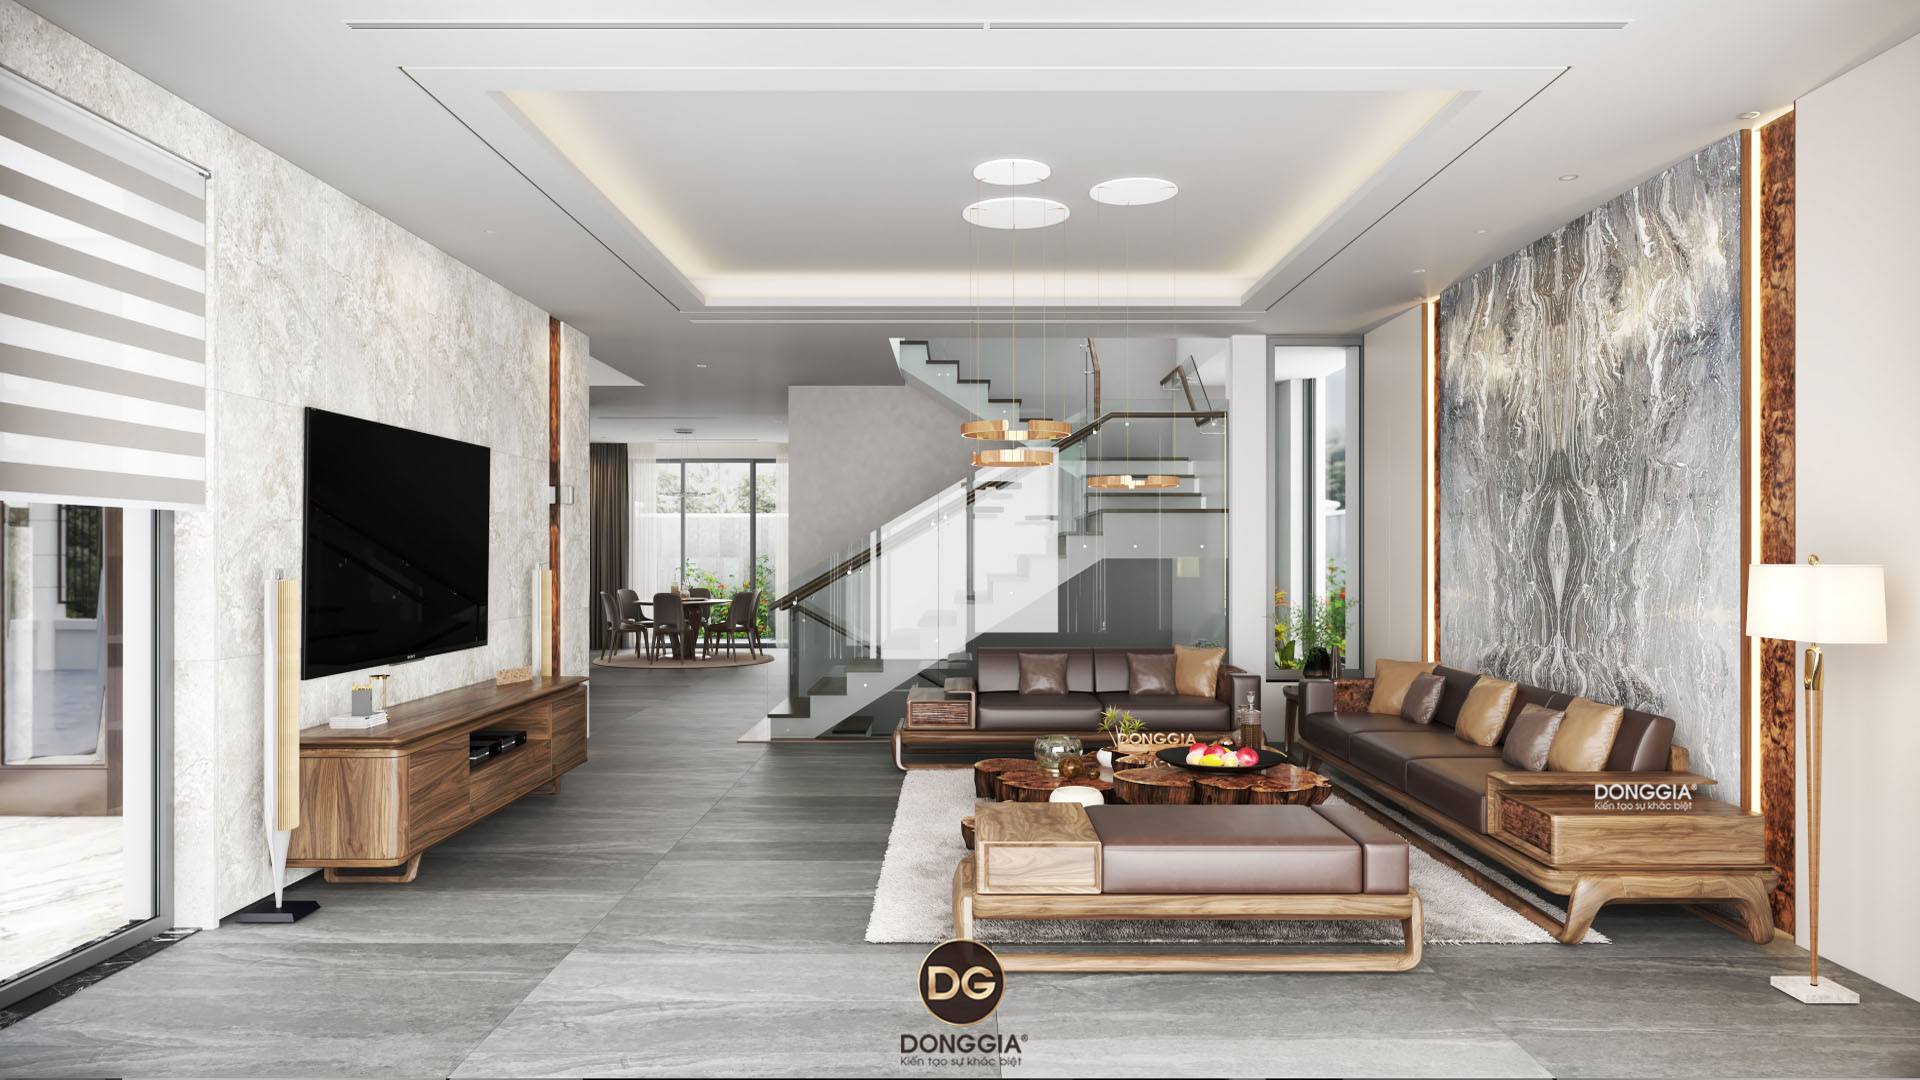 39 Mẫu thiết kế nội thất phòng khách chung cư đẹp, hiện đại | An Lộc